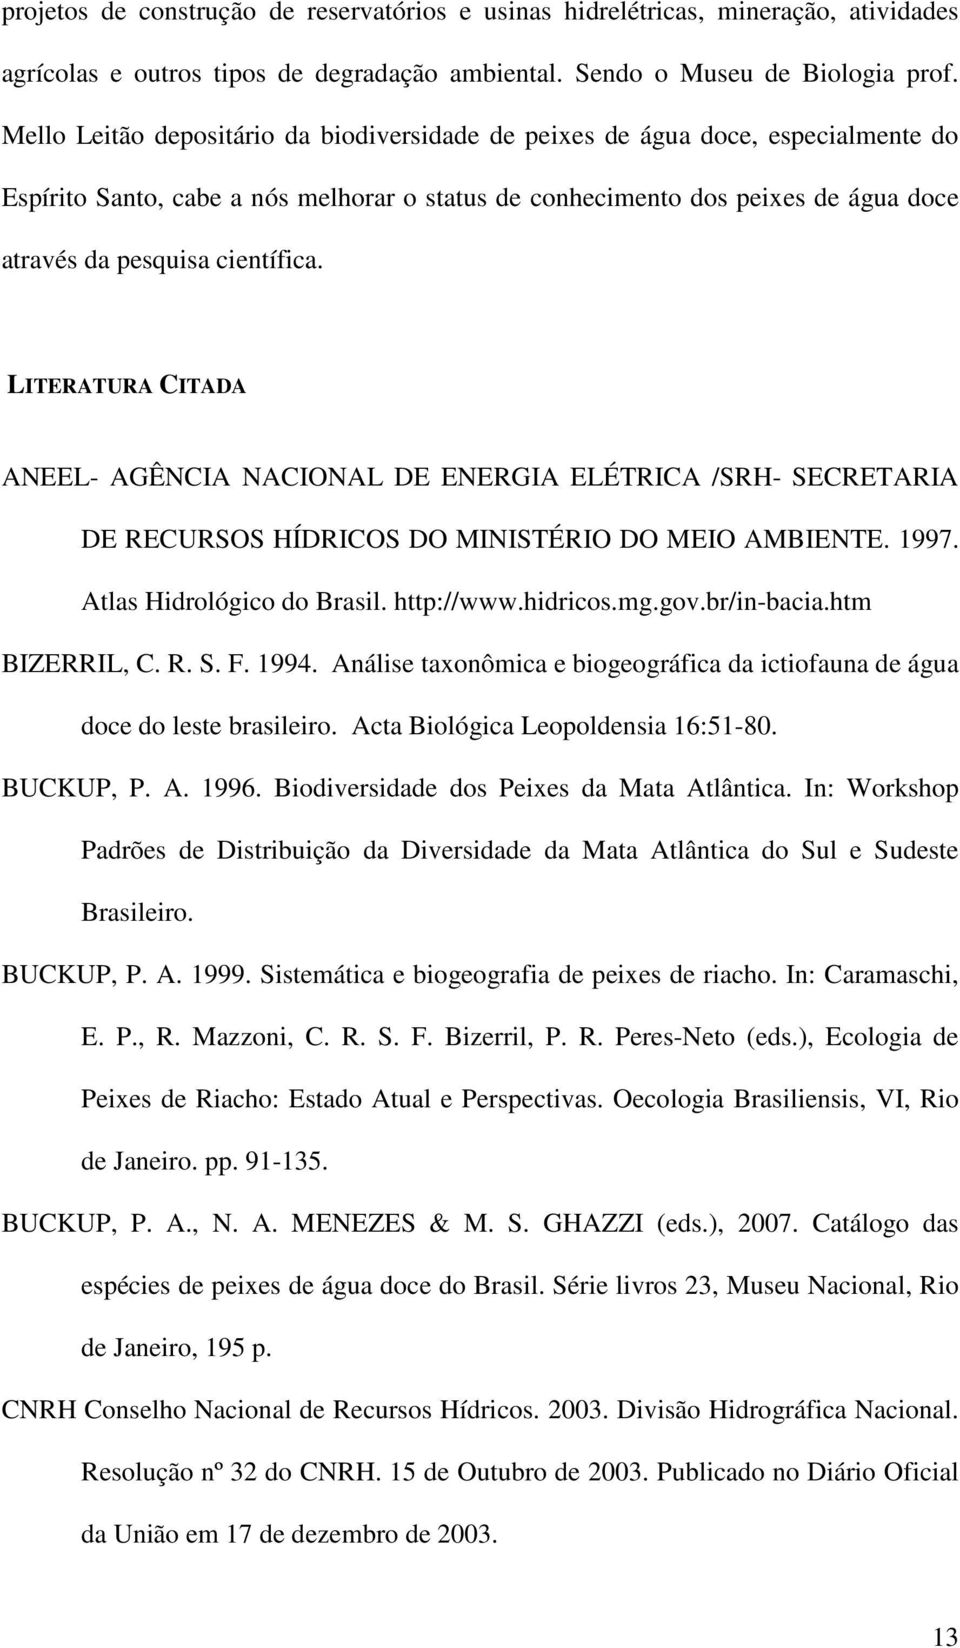 LITERATURA CITADA ANEEL- AGÊNCIA NACIONAL DE ENERGIA ELÉTRICA /SRH- SECRETARIA DE RECURSOS HÍDRICOS DO MINISTÉRIO DO MEIO AMBIENTE. 1997. Atlas Hidrológico do Brasil. http://www.hidricos.mg.gov.